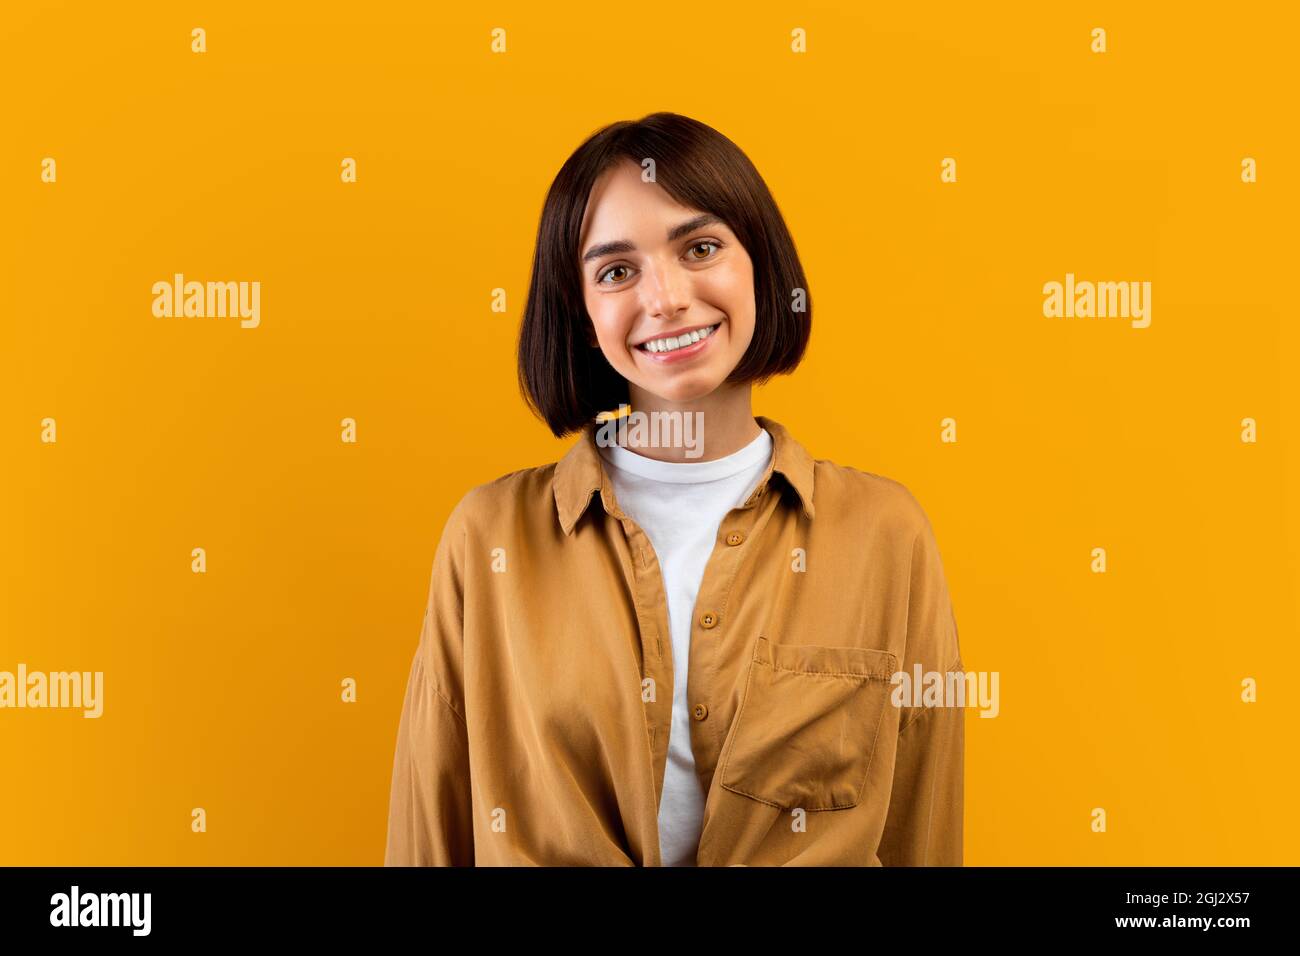 Personne heureuse. Portrait de femme souriante avec bob coupe de cheveux regardant l'appareil photo, posant en studio, isolé sur fond jaune, gros plan tourné avec copie s. Banque D'Images